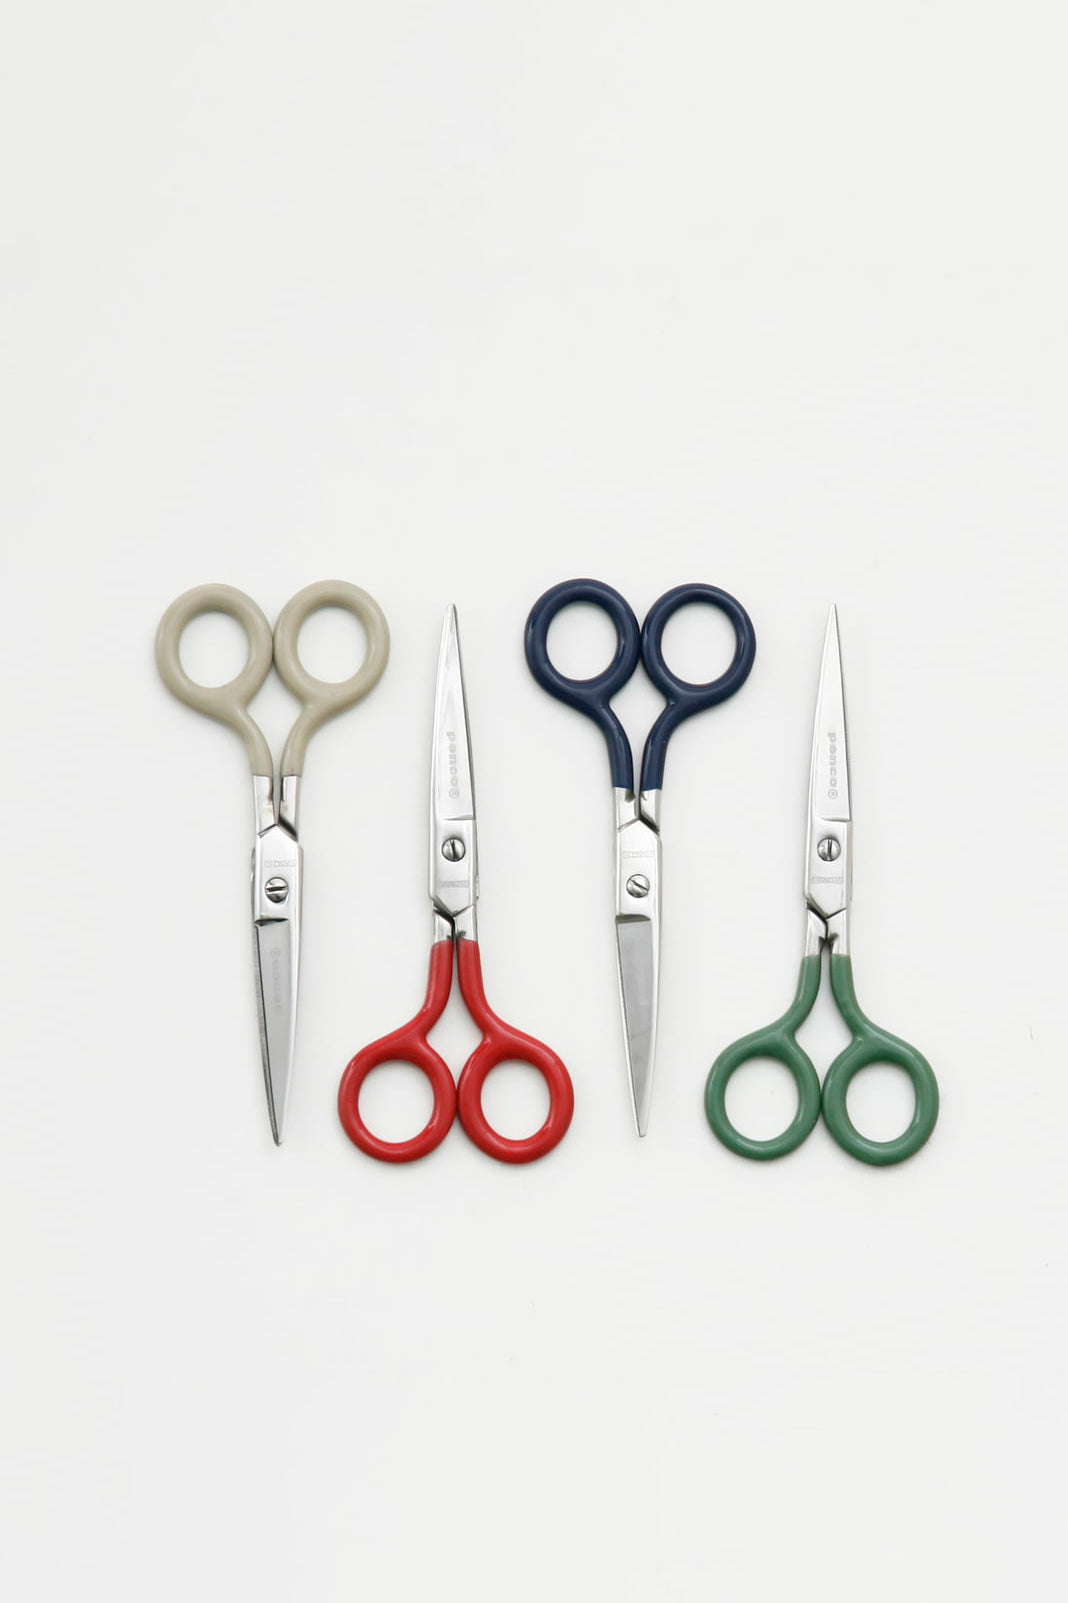 Stainless scissors navy-Penco-[interior]-[design]-KIOSK48TH